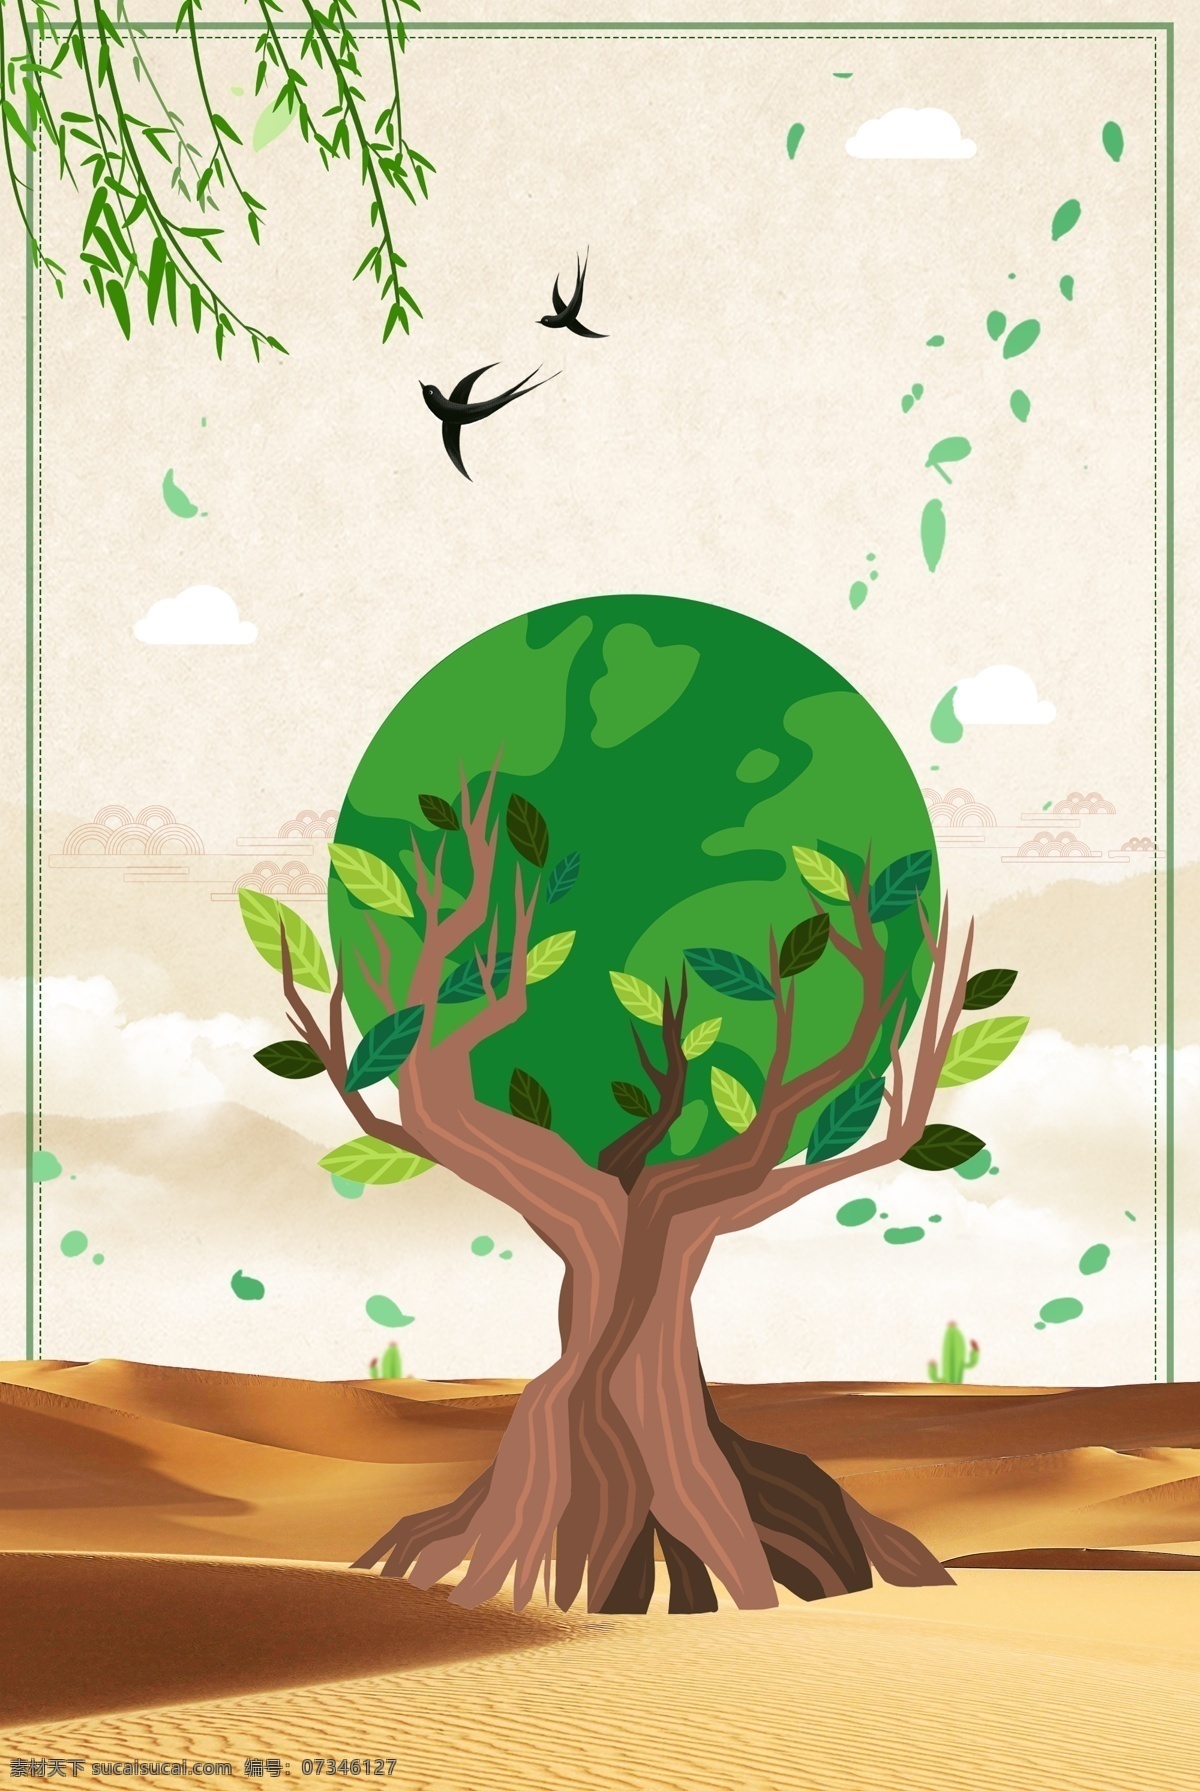 简洁 世界环境日 海报 环境日 保护环境 公益 环保 绿色地球 节能减排 大树